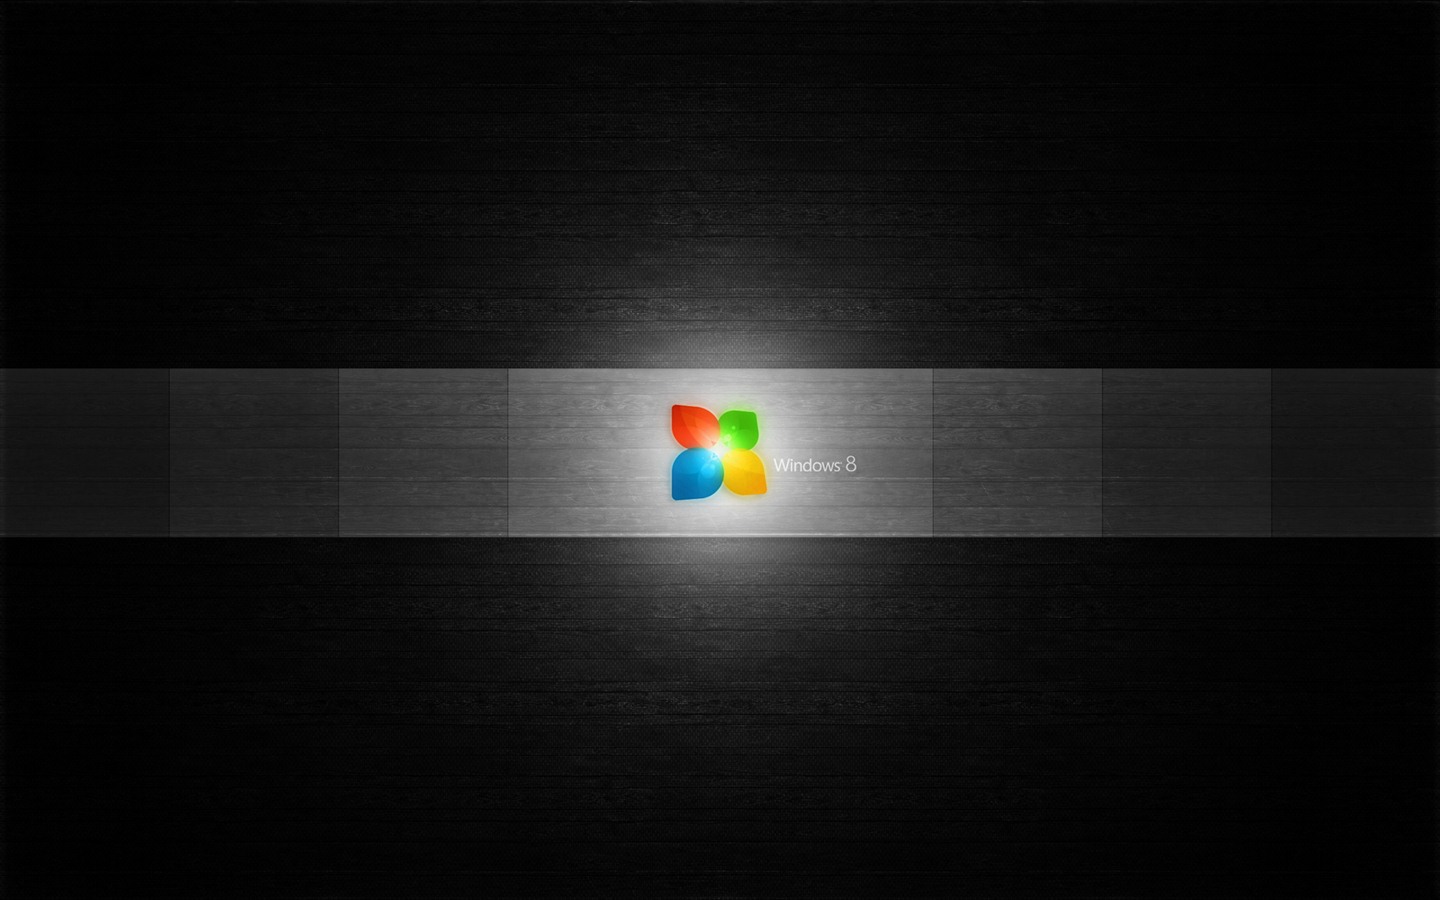 Windows 8 theme wallpaper (1) #7 - 1440x900